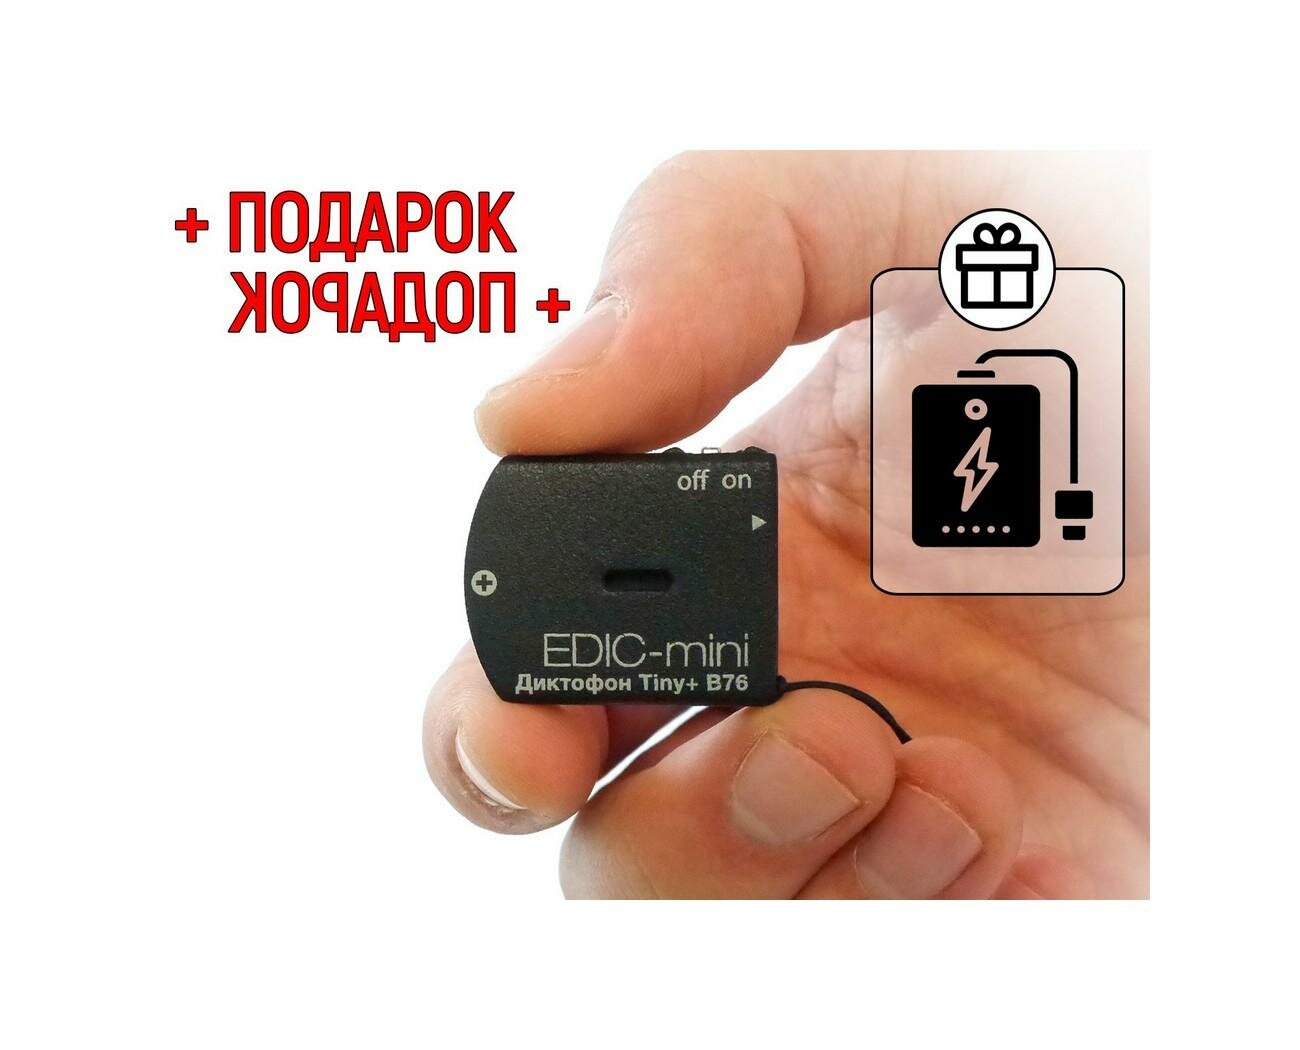 Диктофон для записи разговоров до 150 ч Edic-mini TINY мод: B76-150HQ (S1967RU) + подарок (Power-bank 10000 mAh) 2 режима: кольцевой и линейный (луч